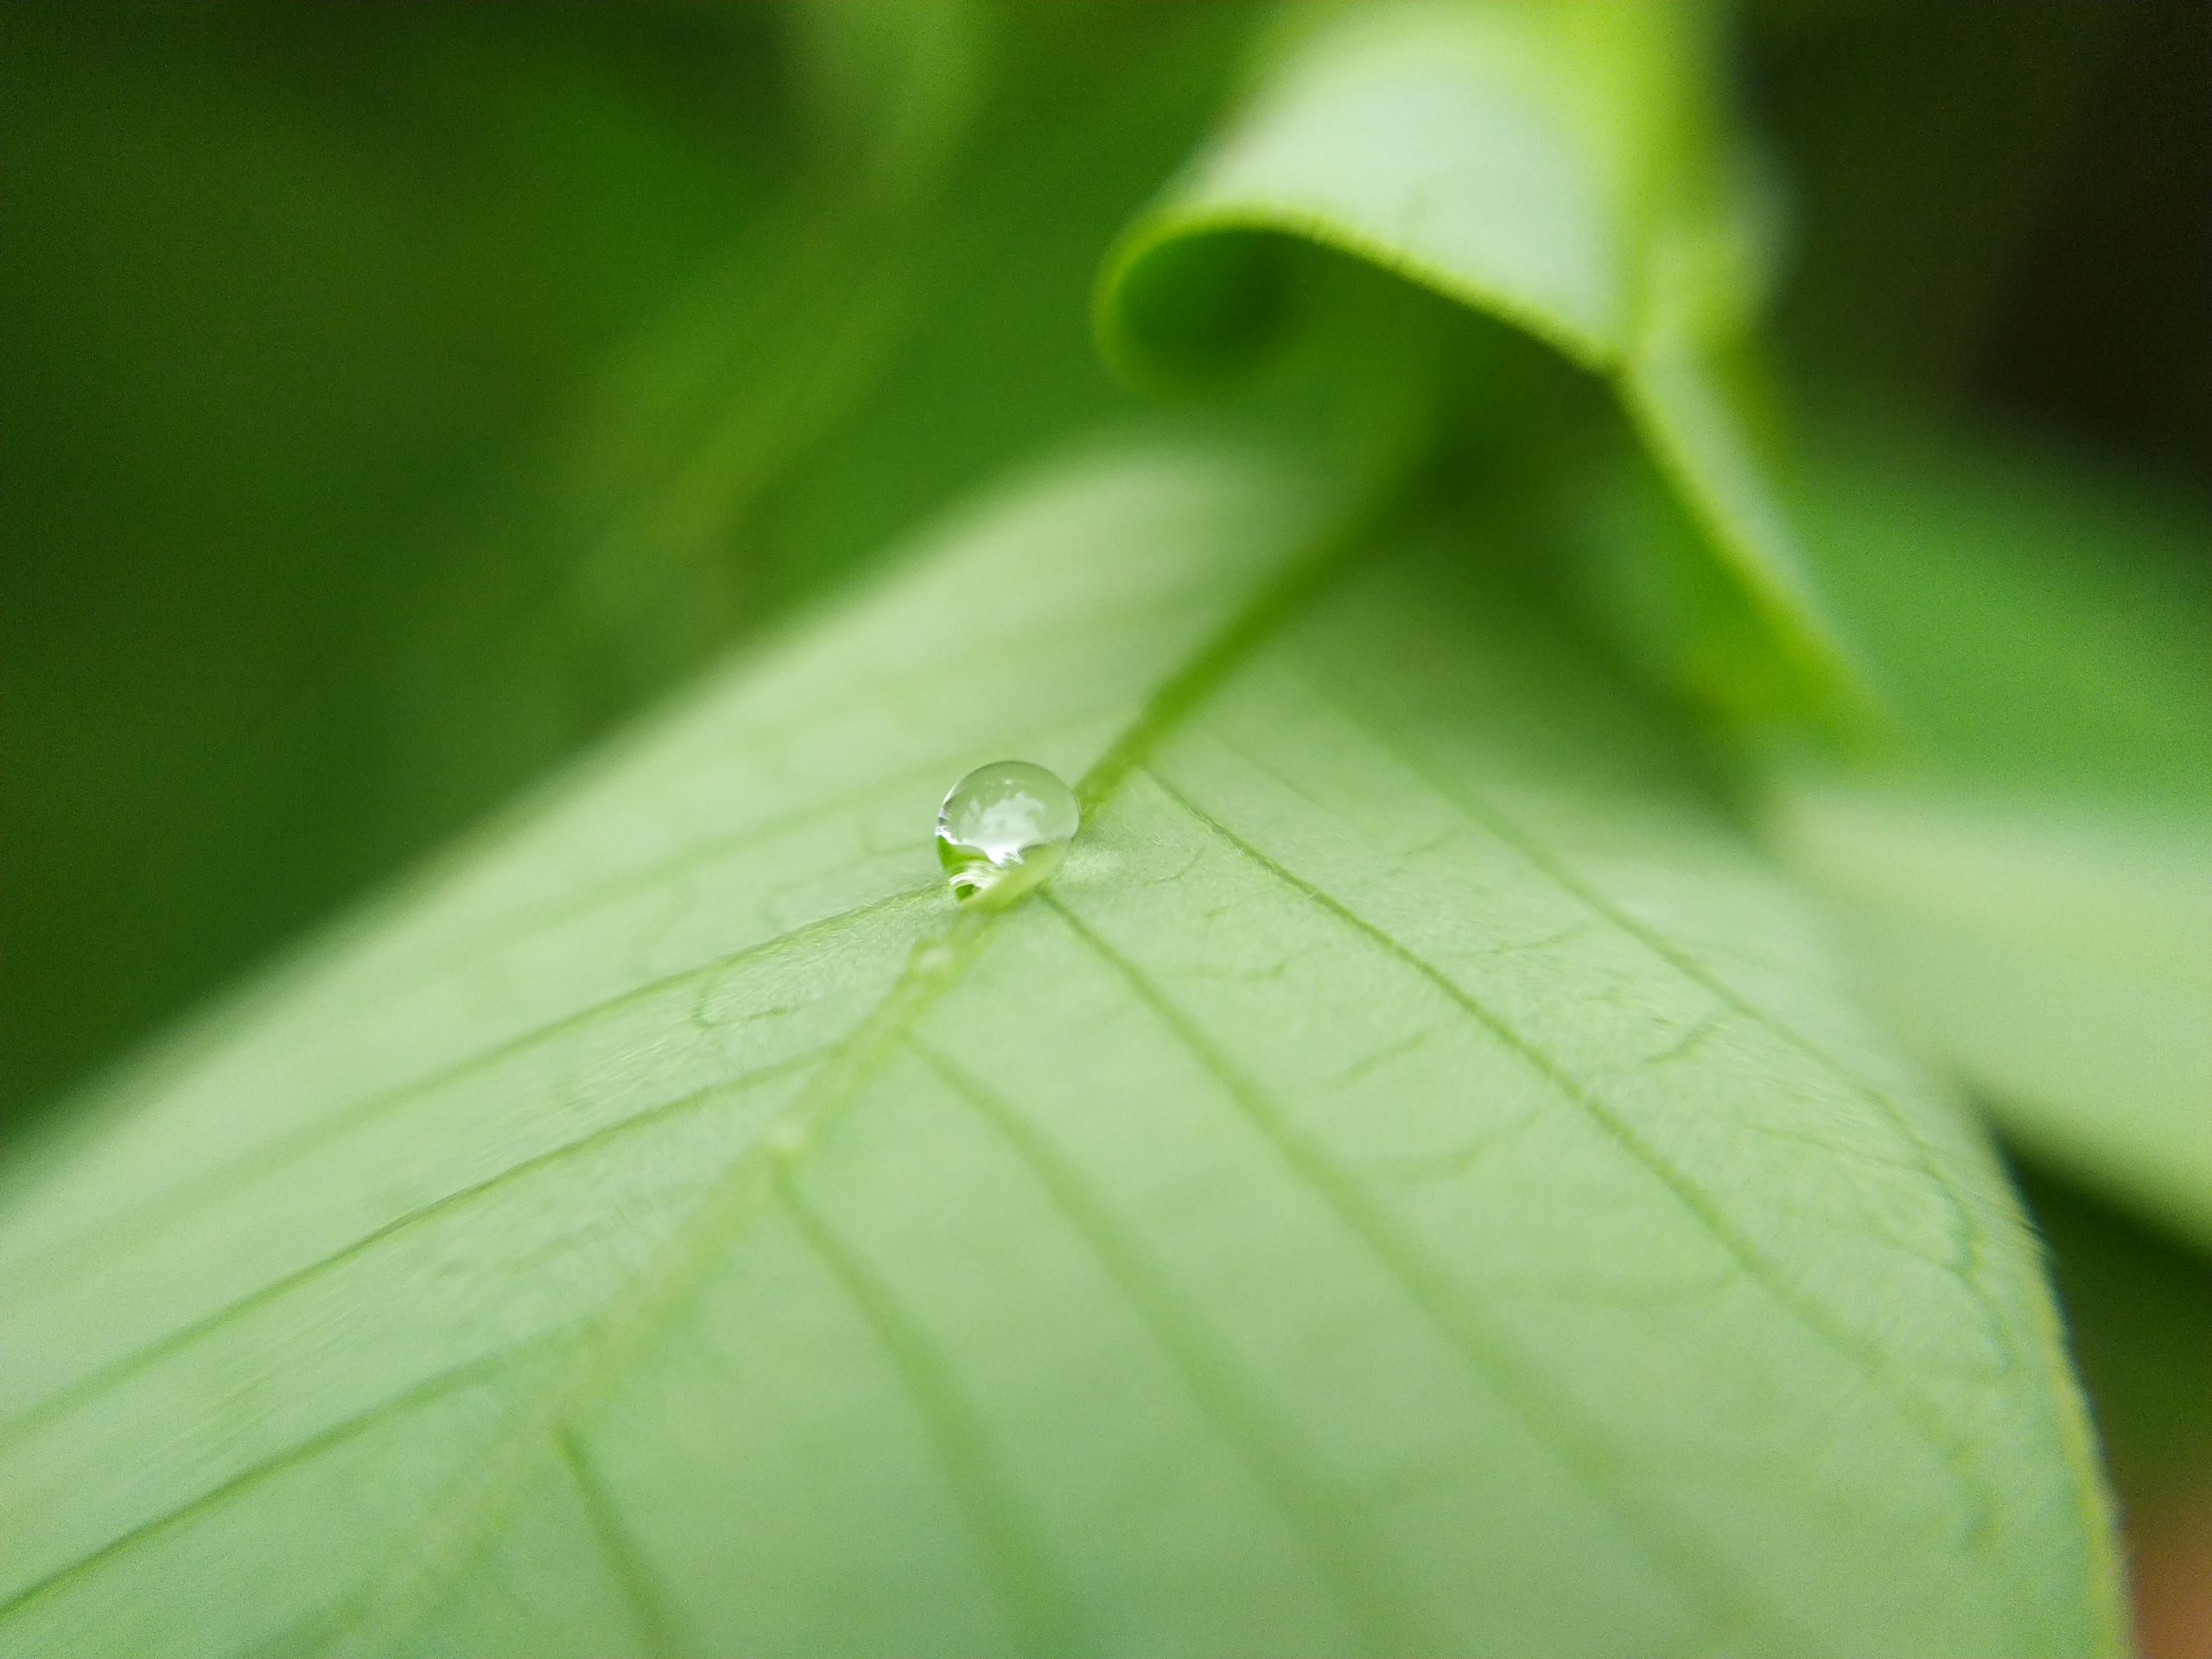 A water drop on a big leaf